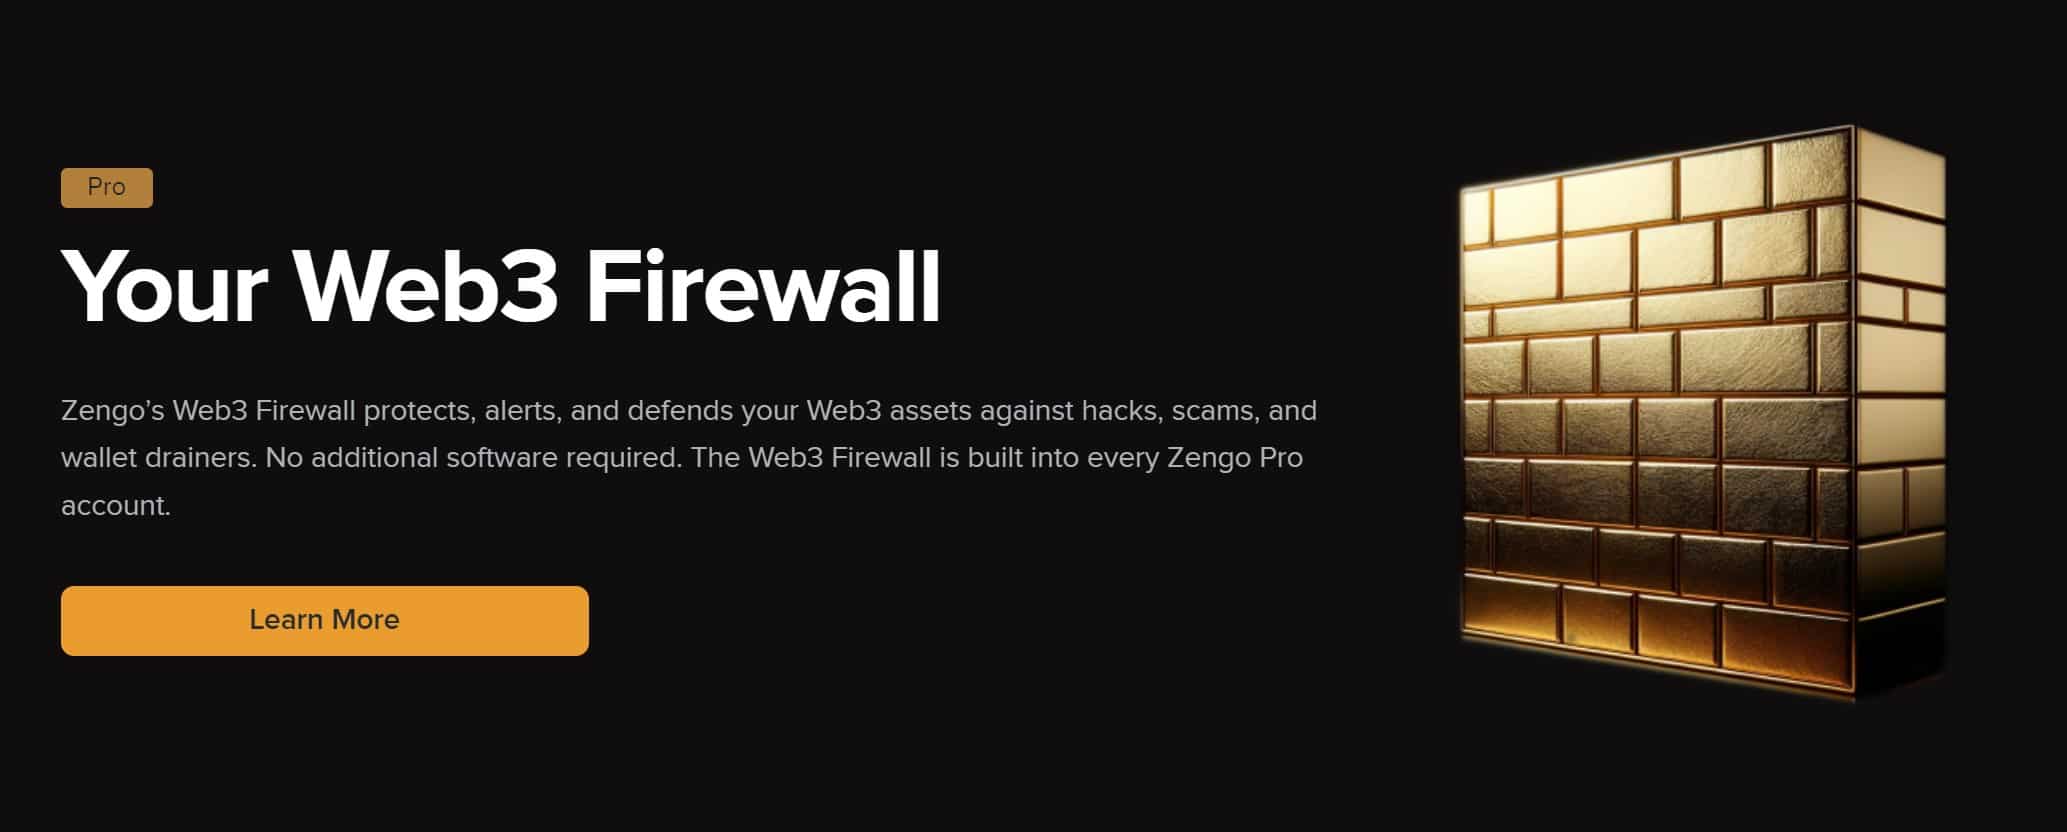 Zengo web3 firewall